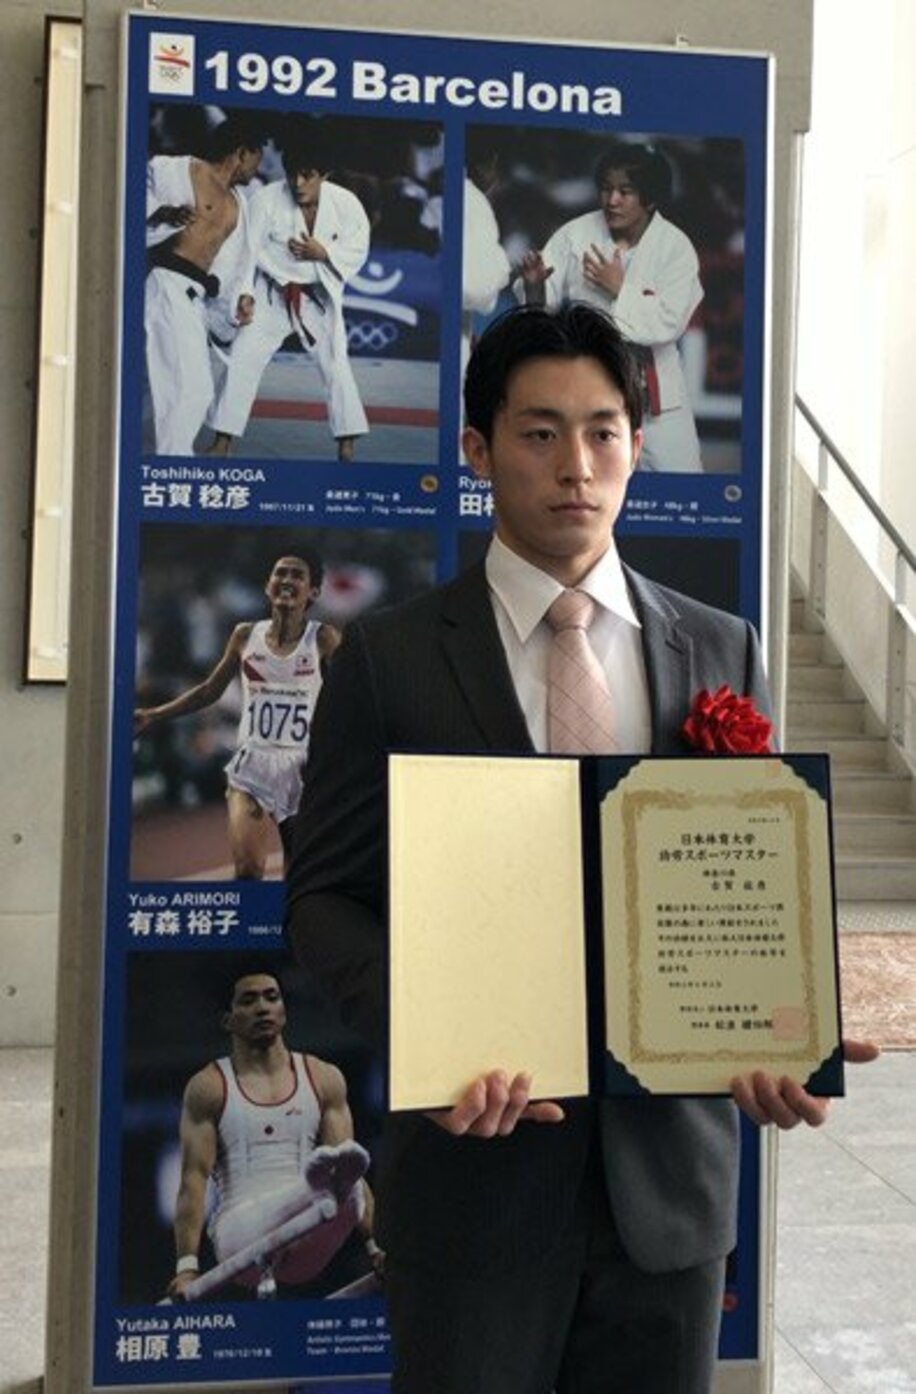  古賀稔彦さんに授与された功労スポーツマスターの証書を掲げる長男の颯人氏